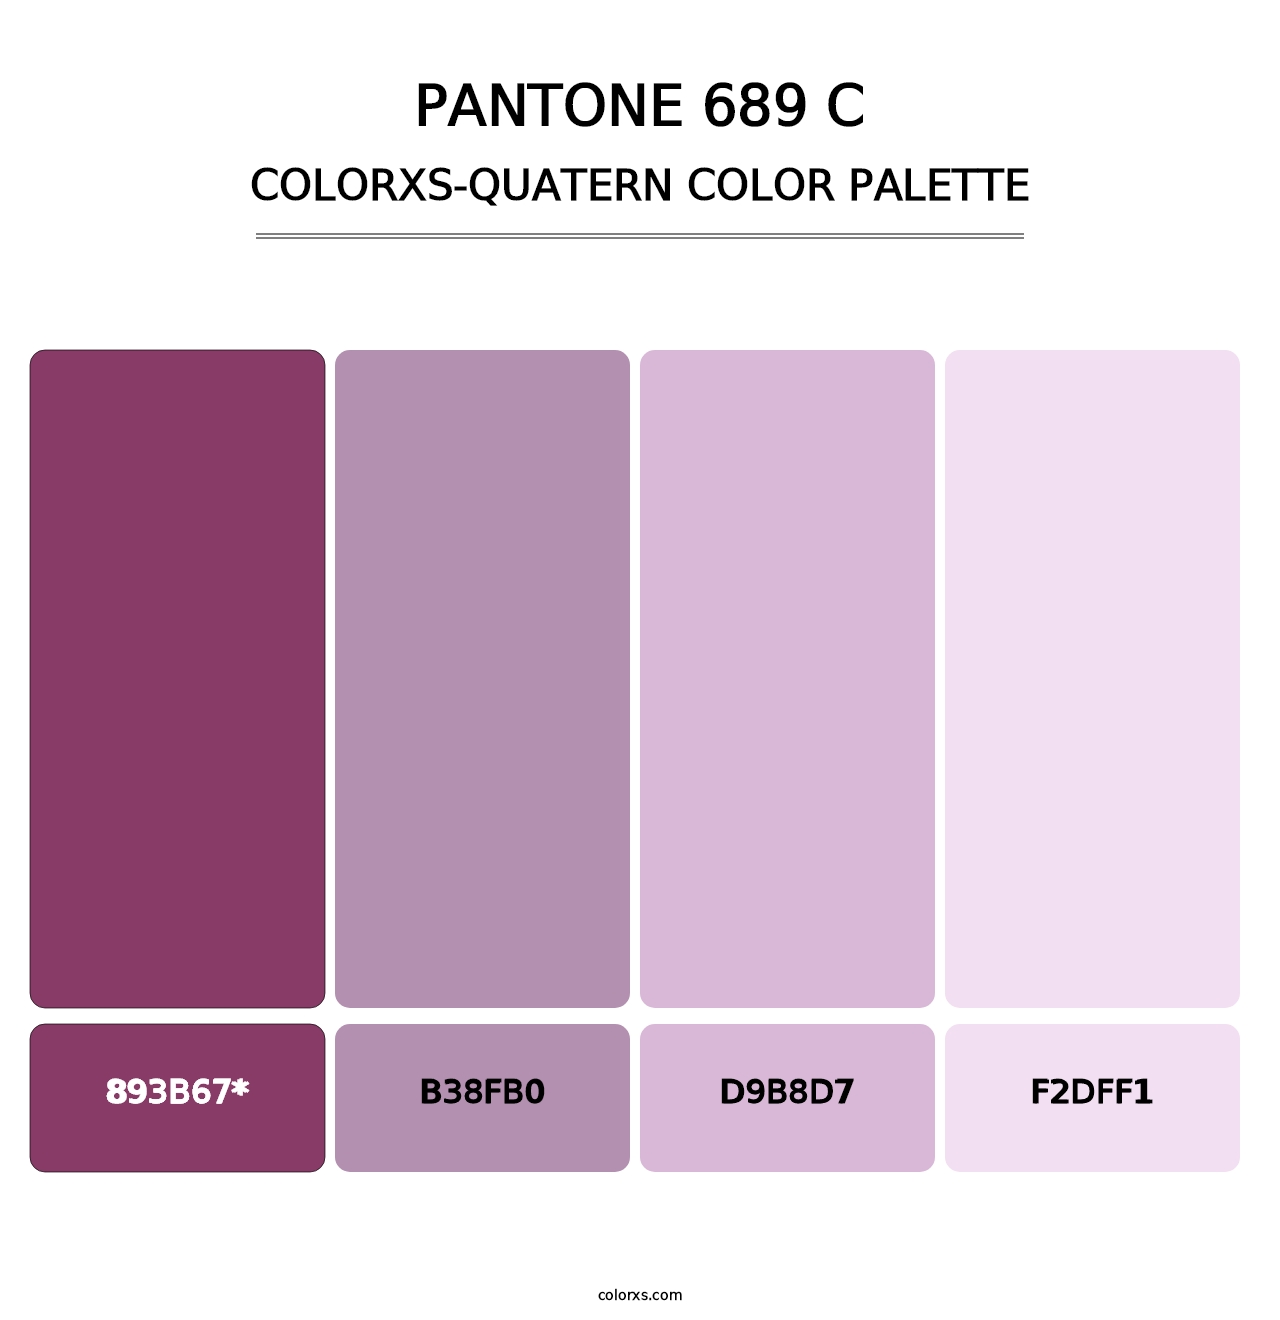 PANTONE 689 C - Colorxs Quatern Palette